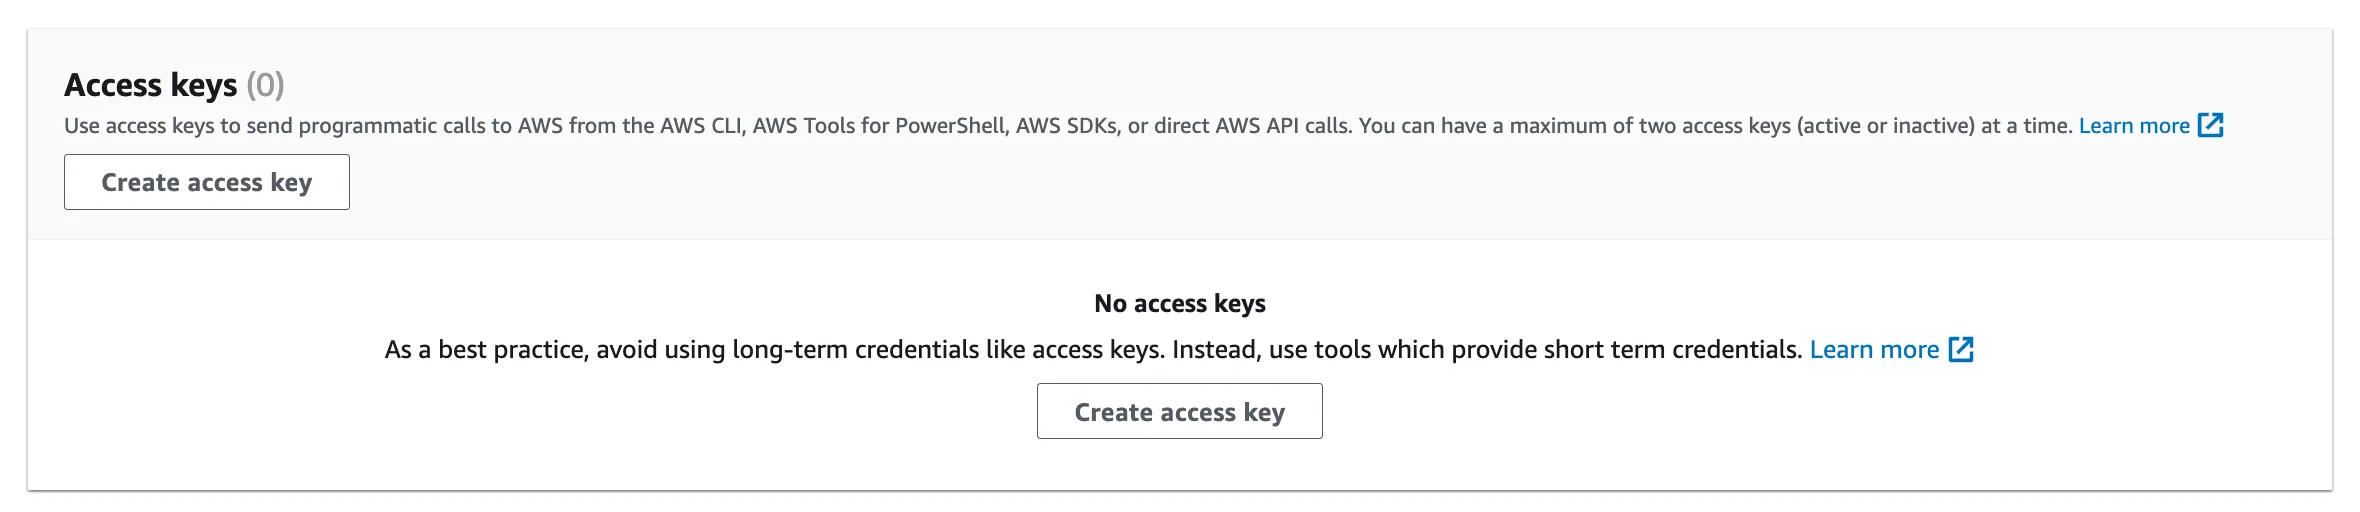 aws-iam-access-keys